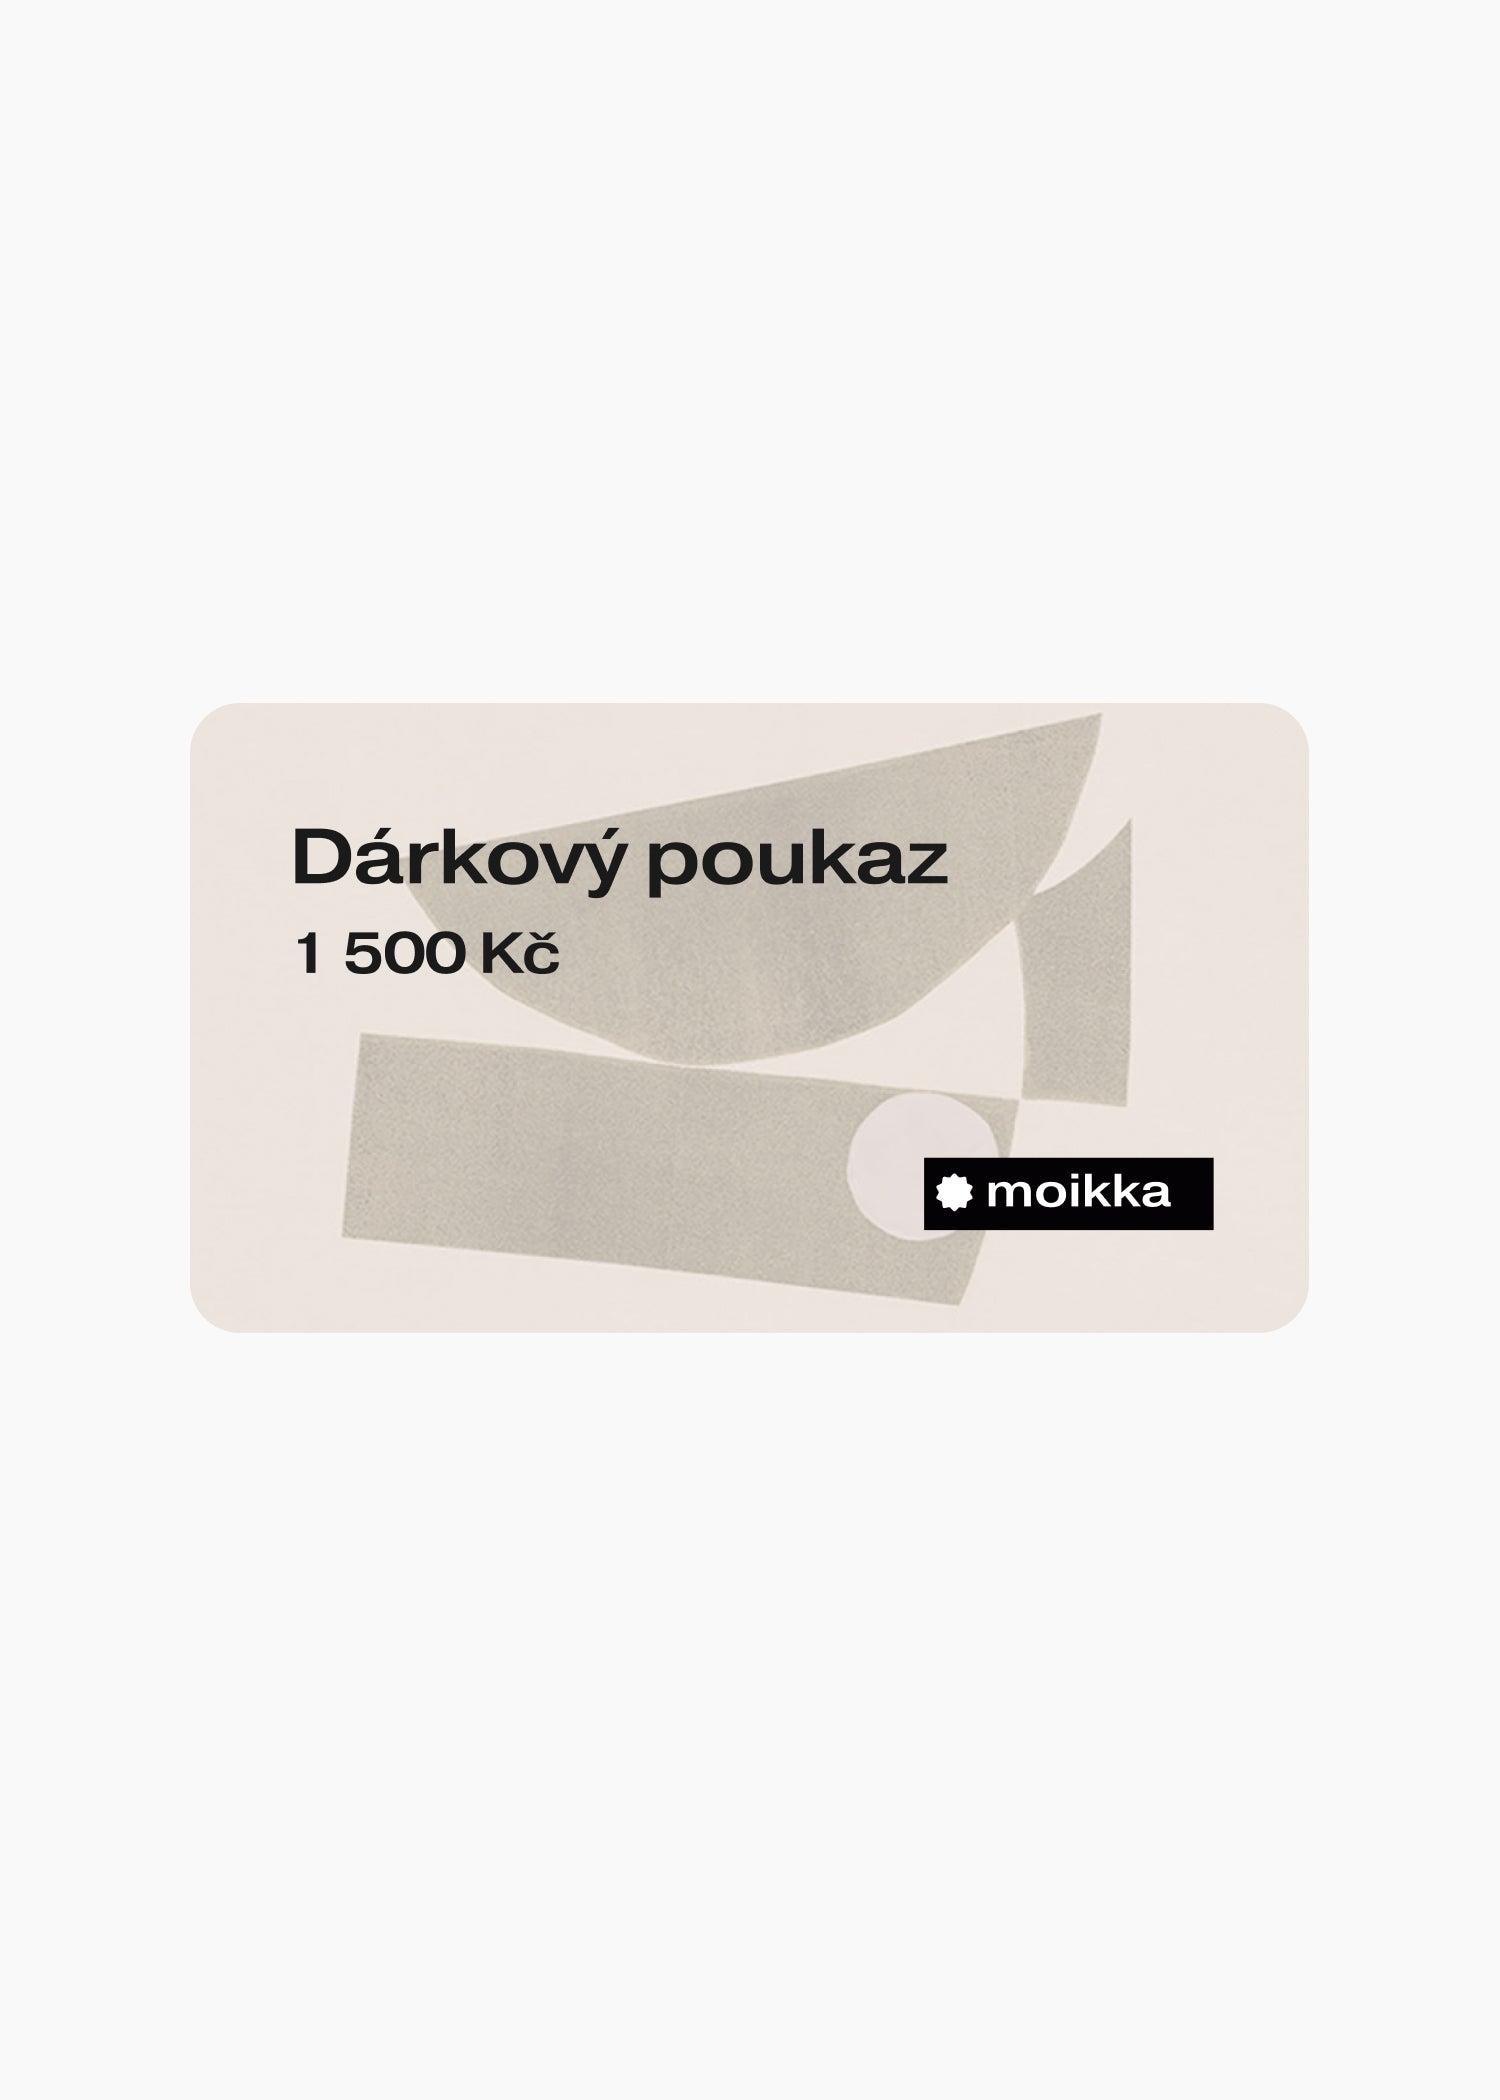 Moikka Dárkový poukaz elektronický 1 500 Kč